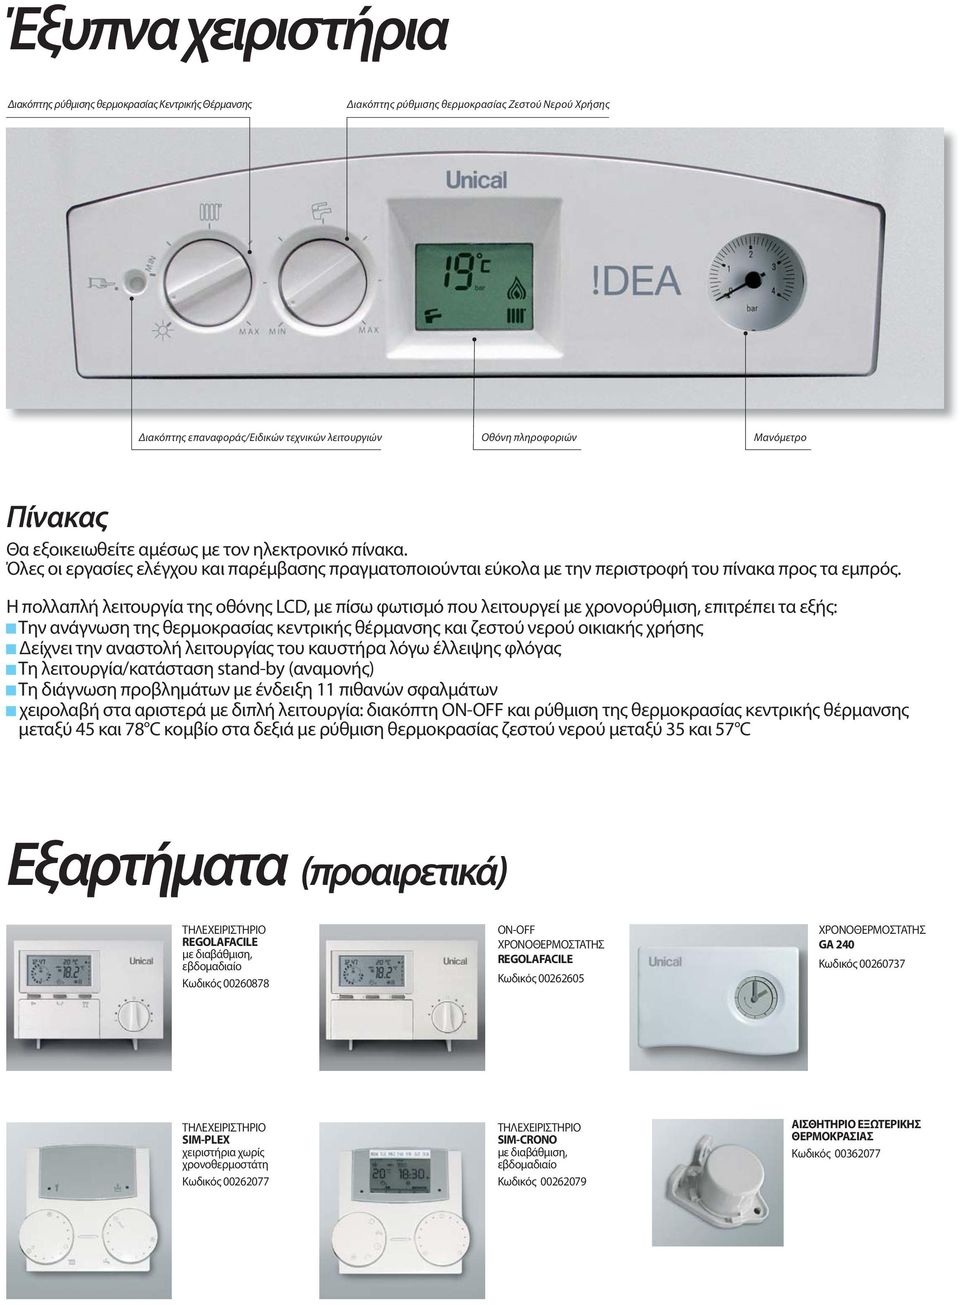 Η πολλαπλή λειτουργία της οθόνης LCD, με πίσω φωτισμό που λειτουργεί με χρονορύθμιση, επιτρέπει τα εξής: Την ανάγνωση της θερμοκρασίας κεντρικής θέρμανσης και ζεστού νερού οικιακής χρήσης Δείχνει την